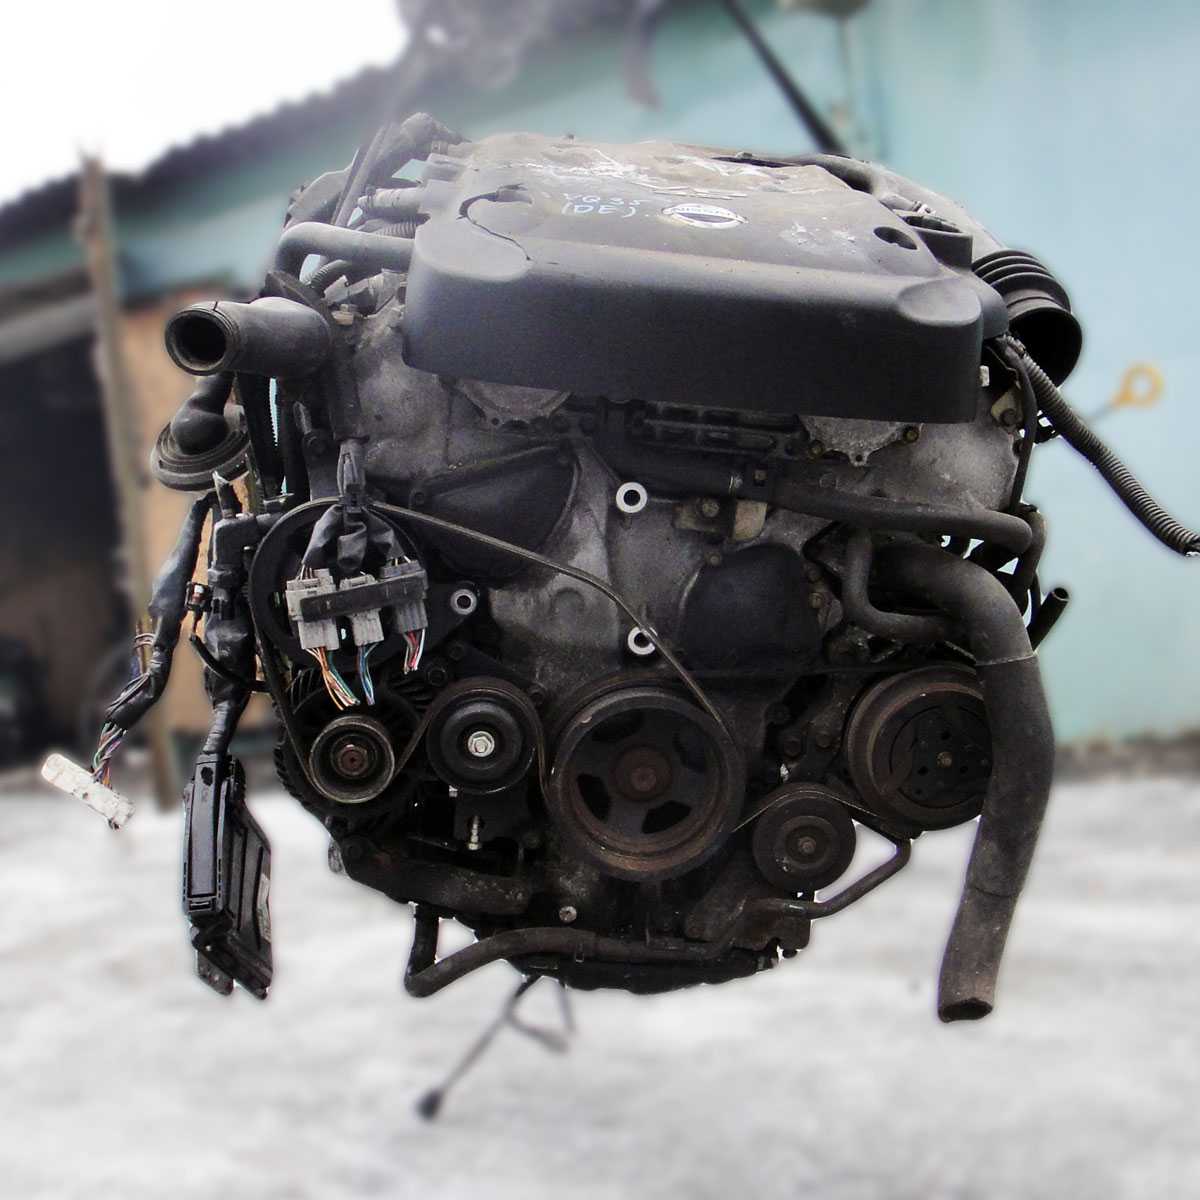 Двигатель g4fc kia, hyundai, технические характеристики, какое масло лить, ремонт двигателя g4fc, доработки и тюнинг, схема устройства, рекомендации по обслуживанию